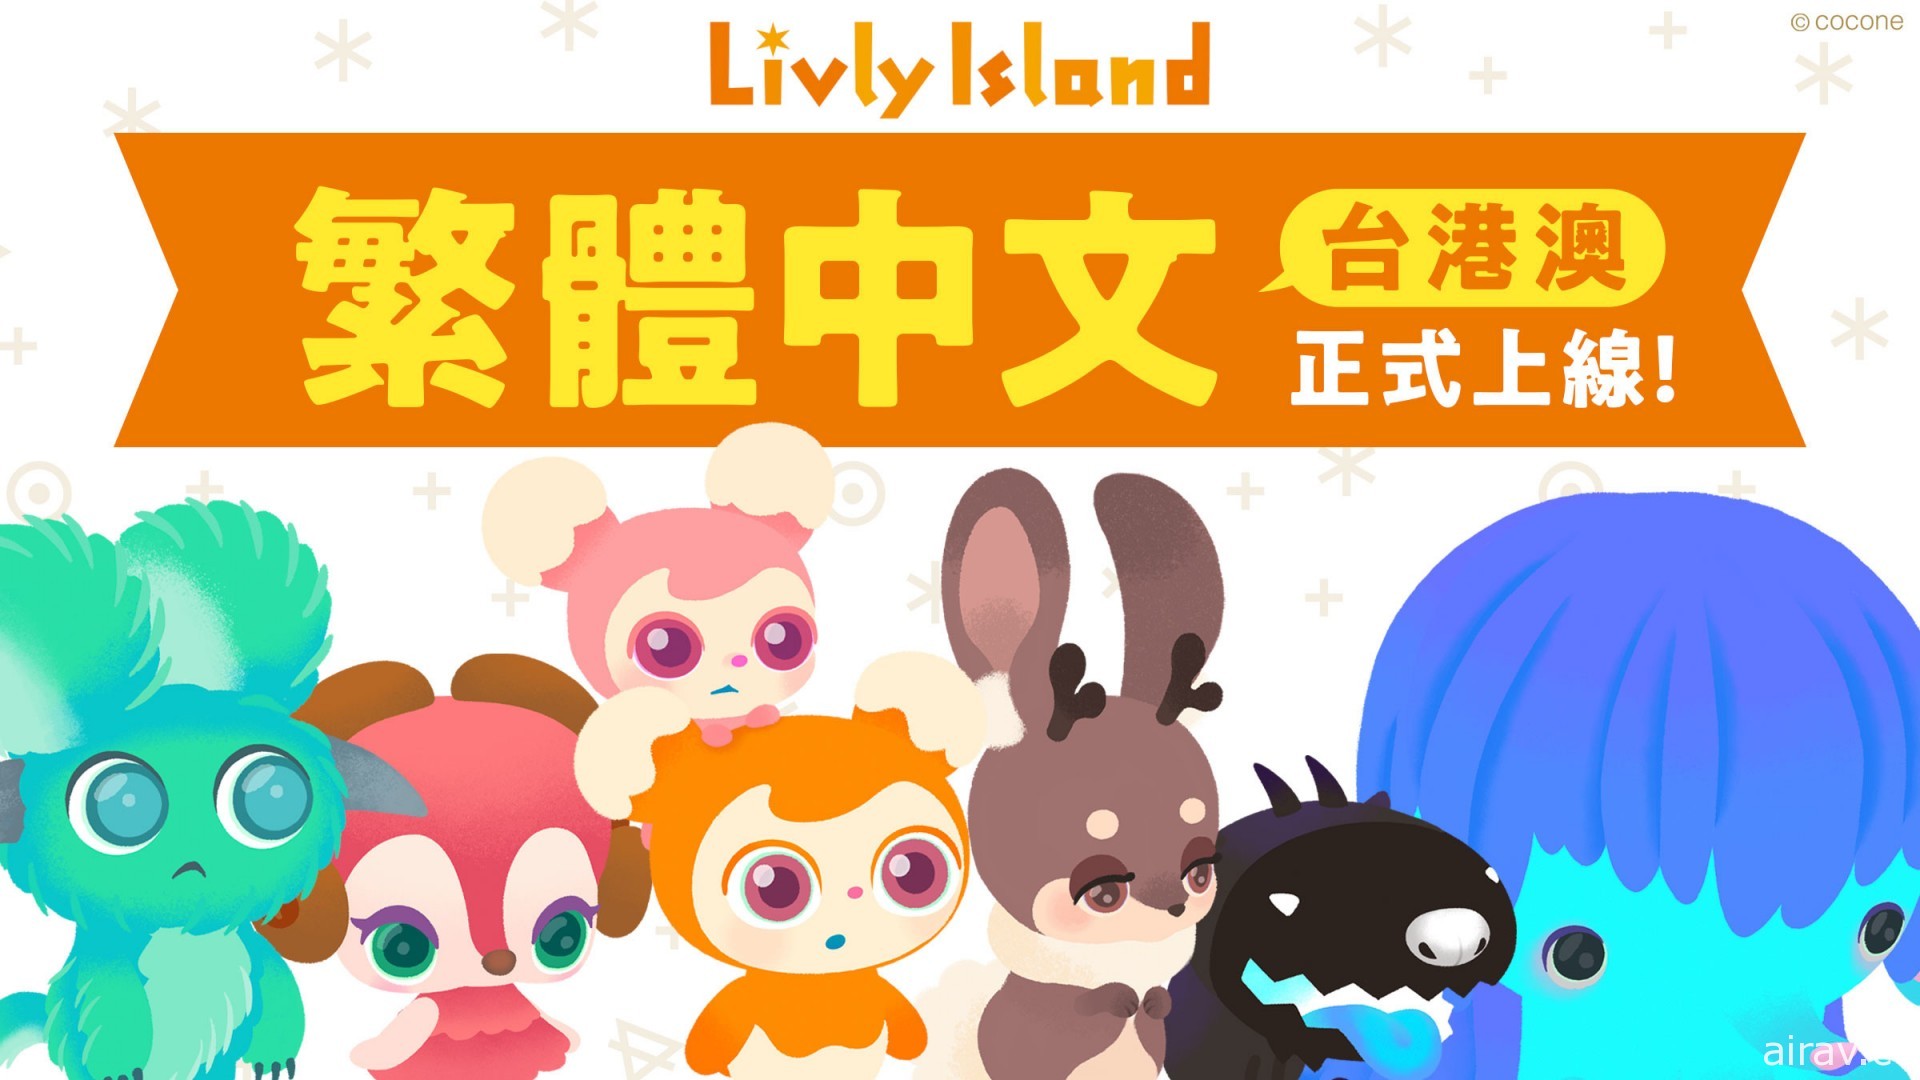 箱庭 App《宠物岛 Livly Island》发布繁体中文版 照顾不可思议的炼金生物 Livly